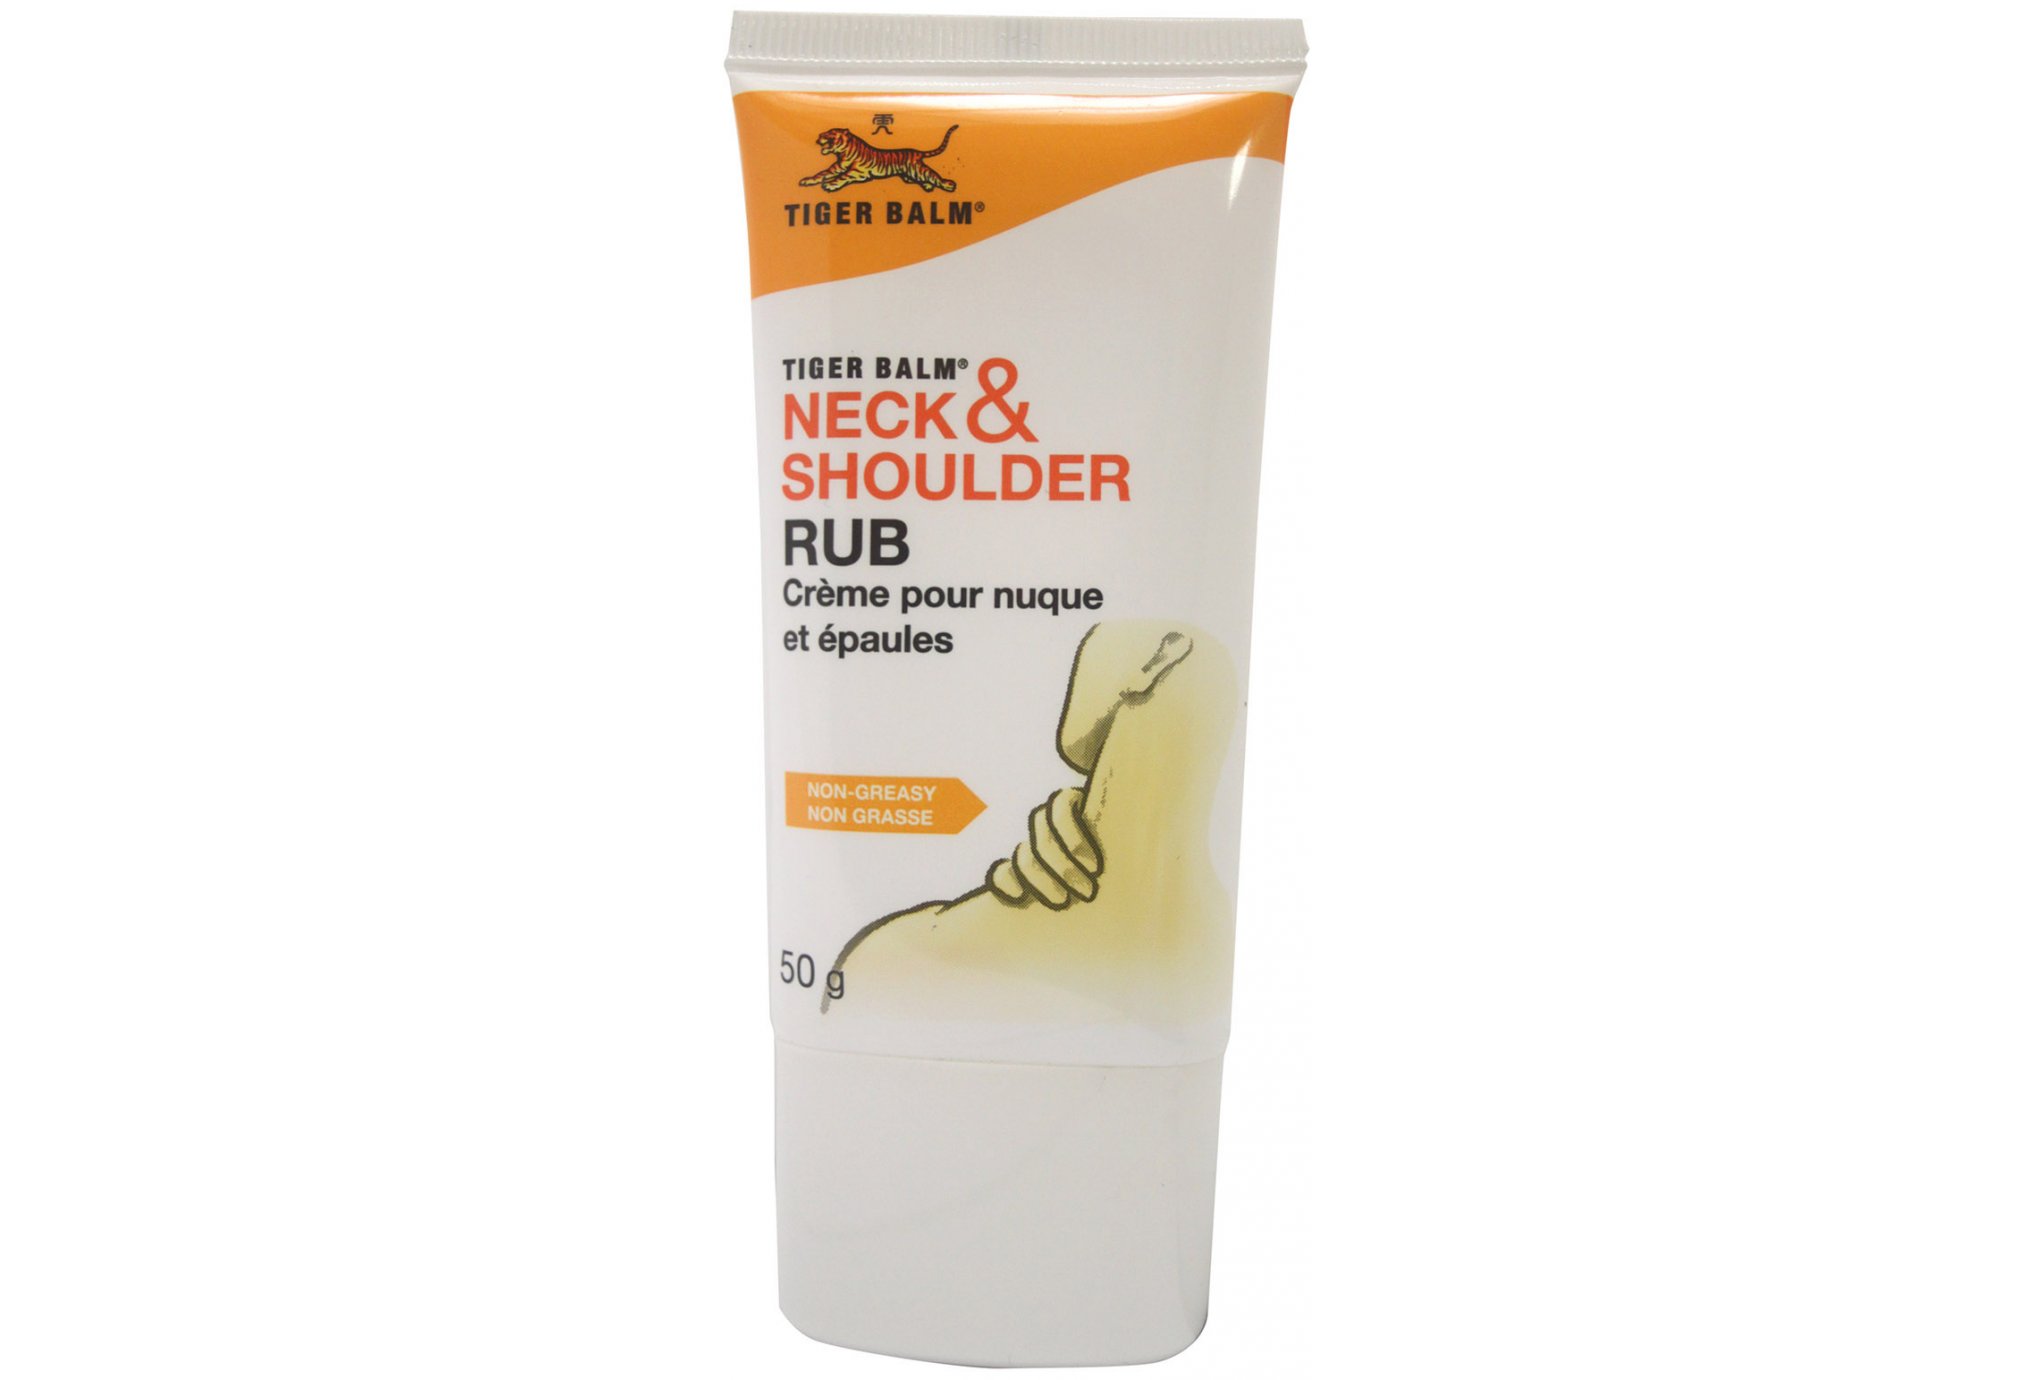 Baume Du tigre crème neck & shoulder 50g protection musculaire & articulaire